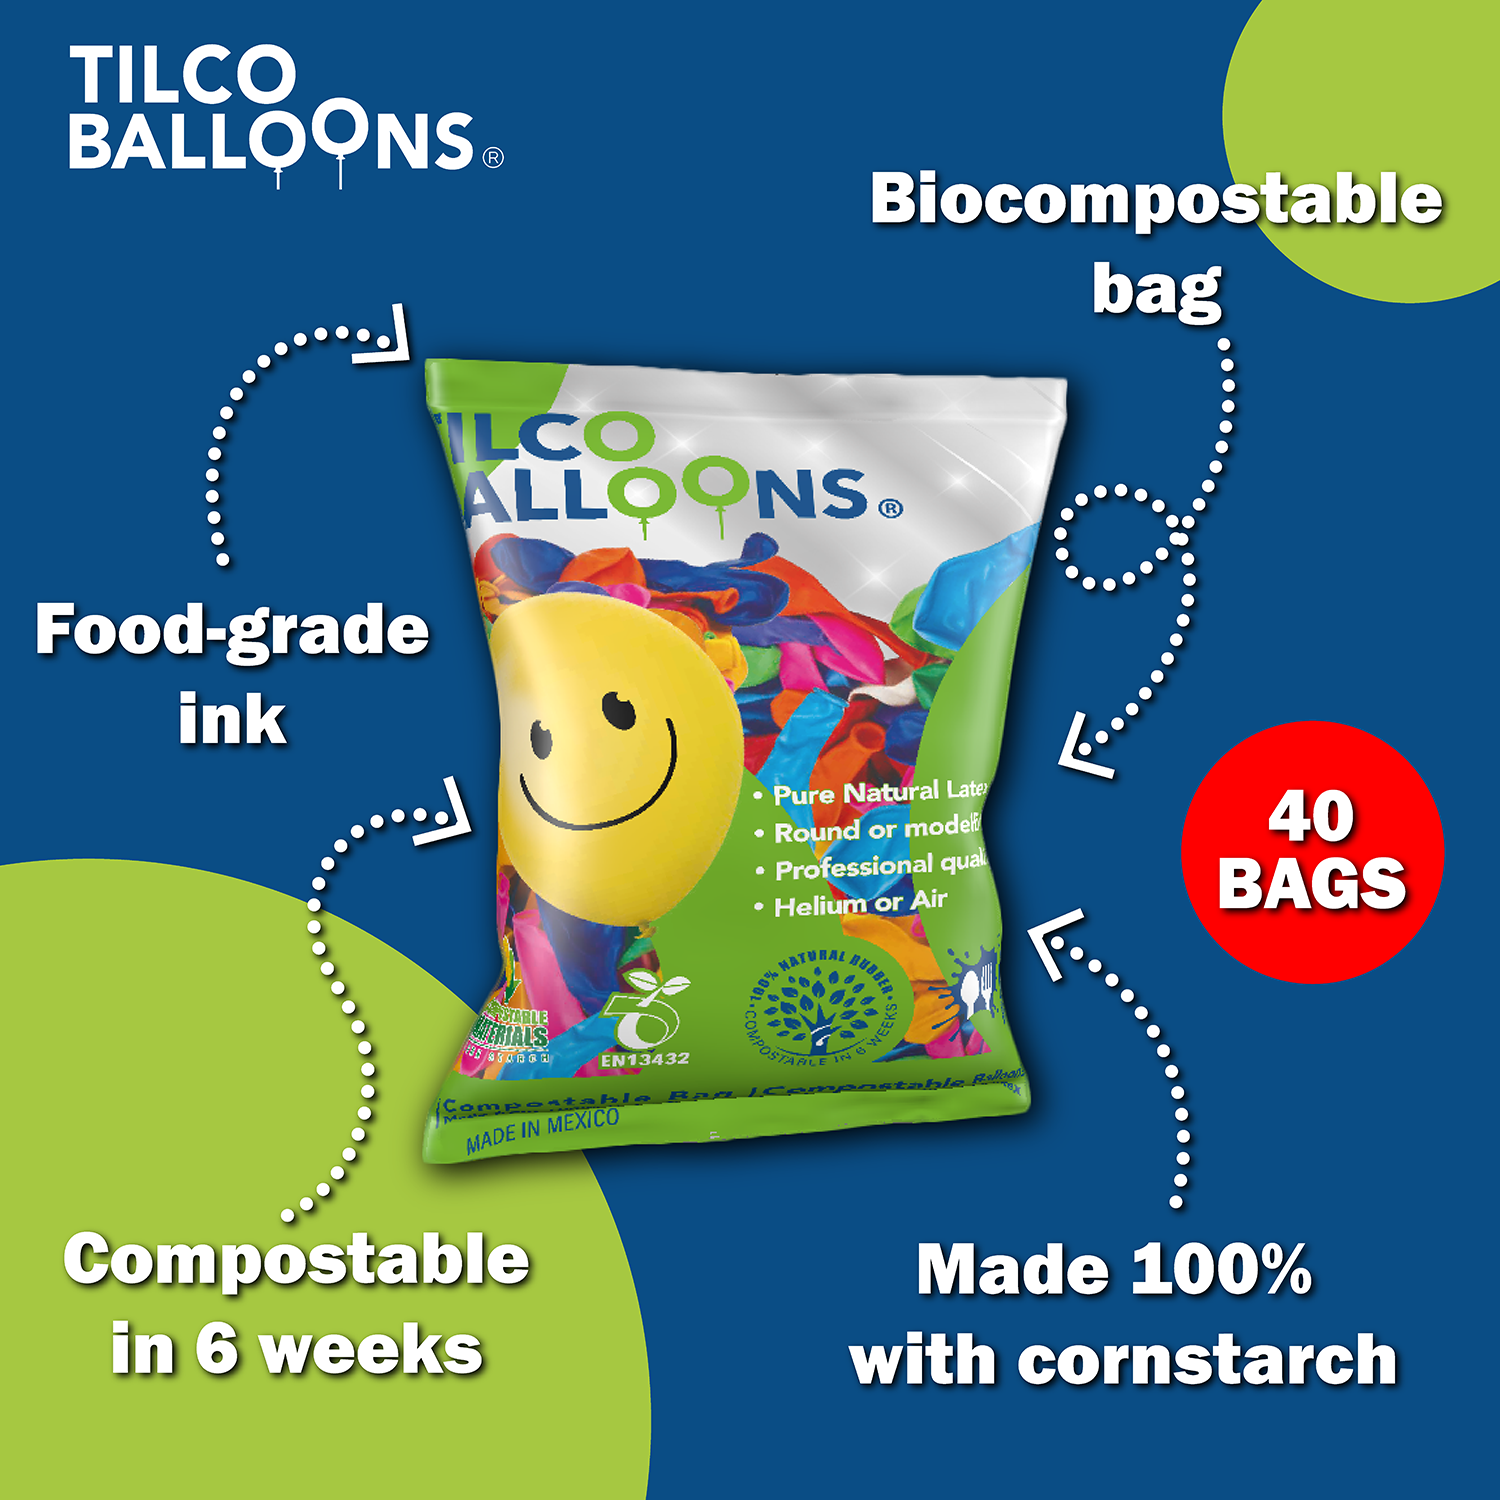 40 Bags Tilco Balloons